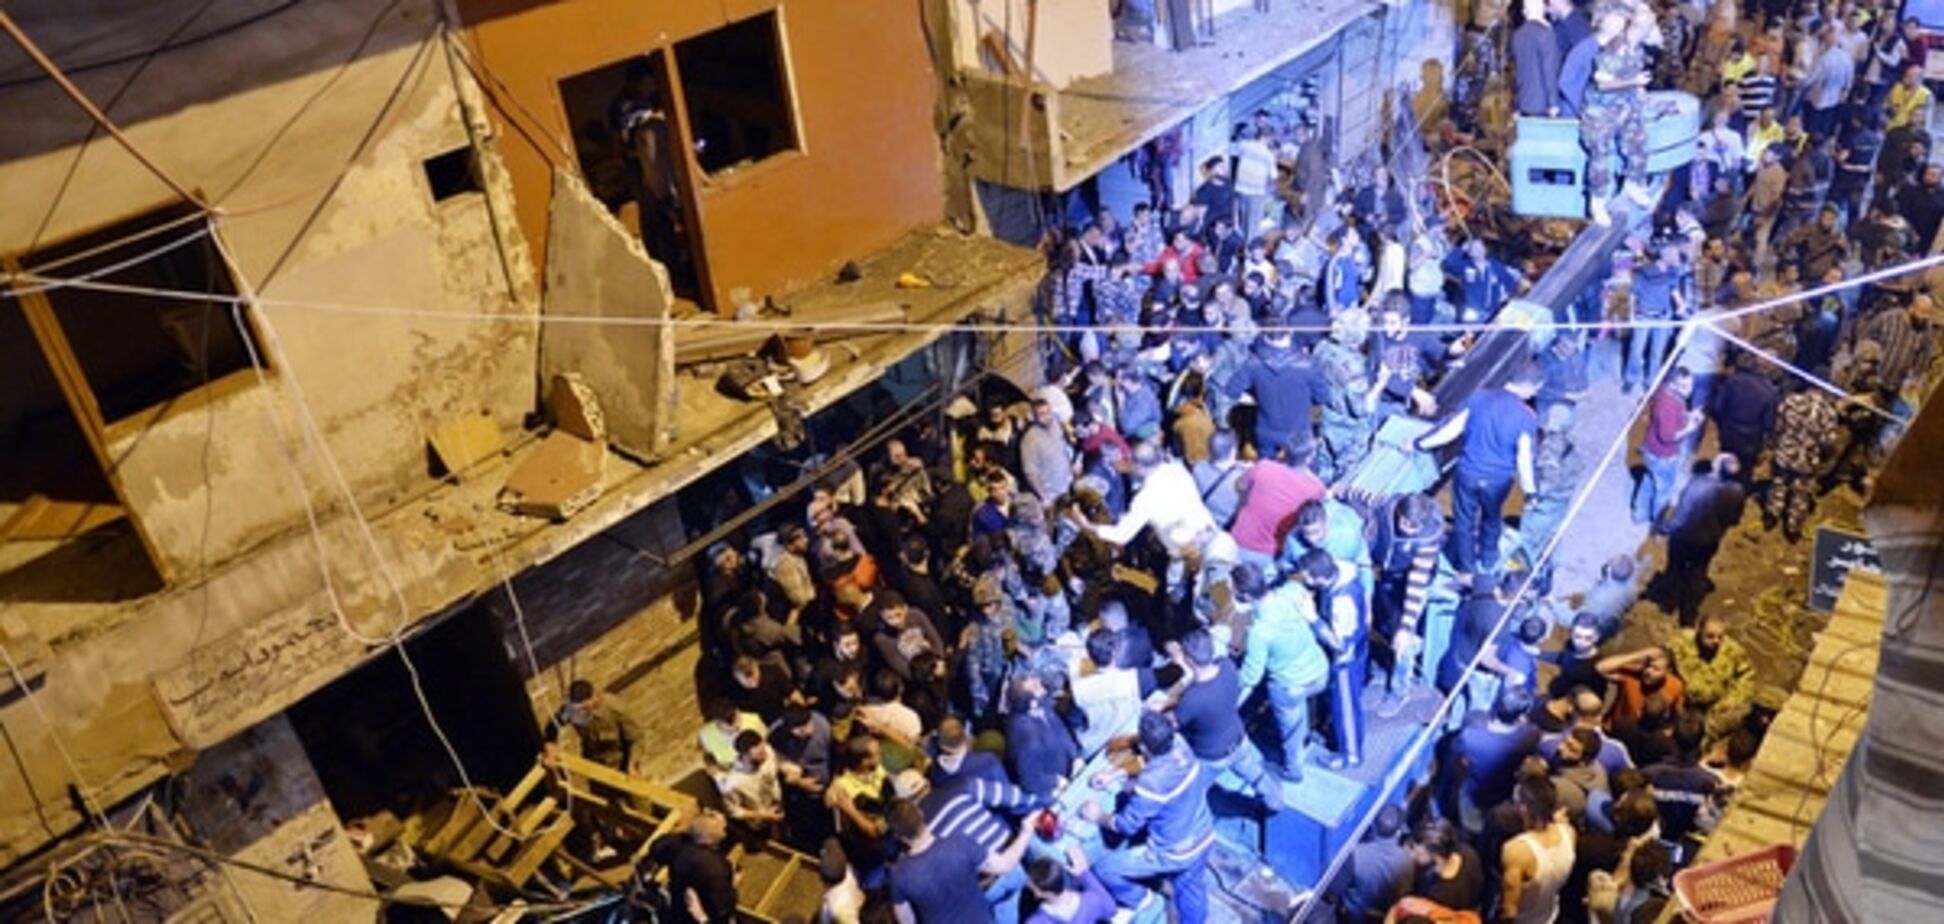 Двойной теракт в столице Ливана: десятки погибших, сотни раненых